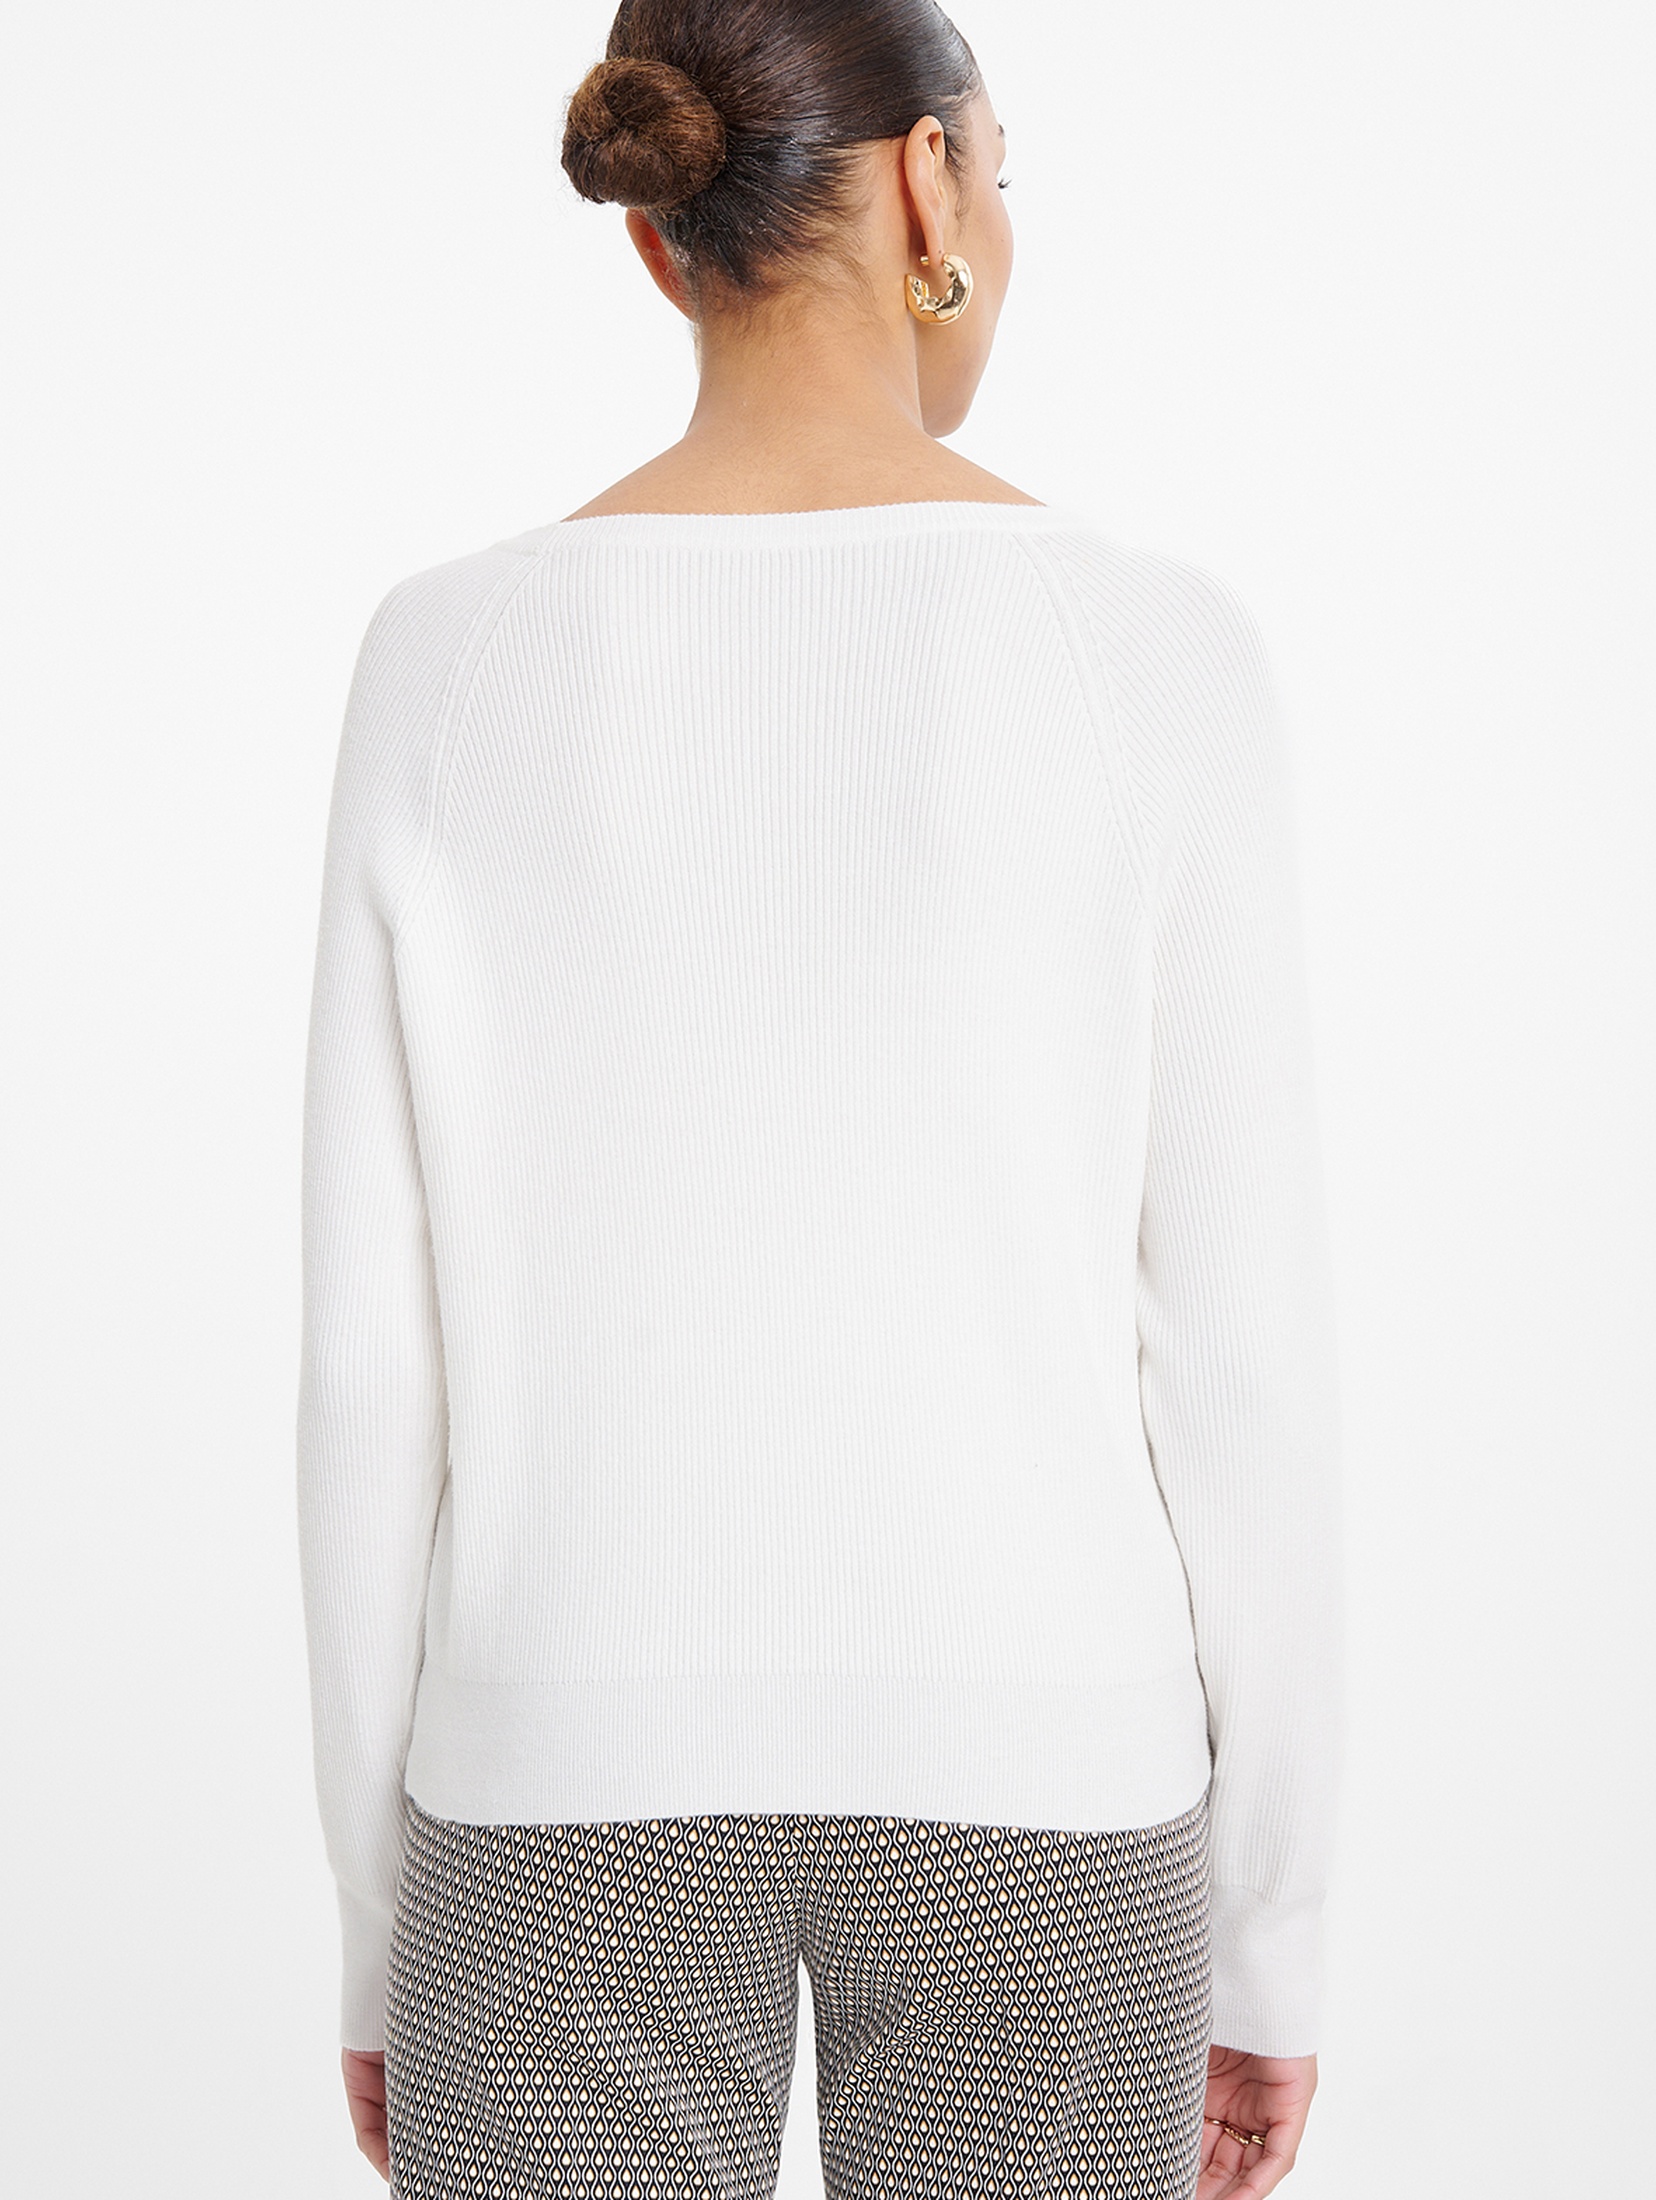 Sweter damski raglan z ozdobnymi guzikami przy rękawach biały